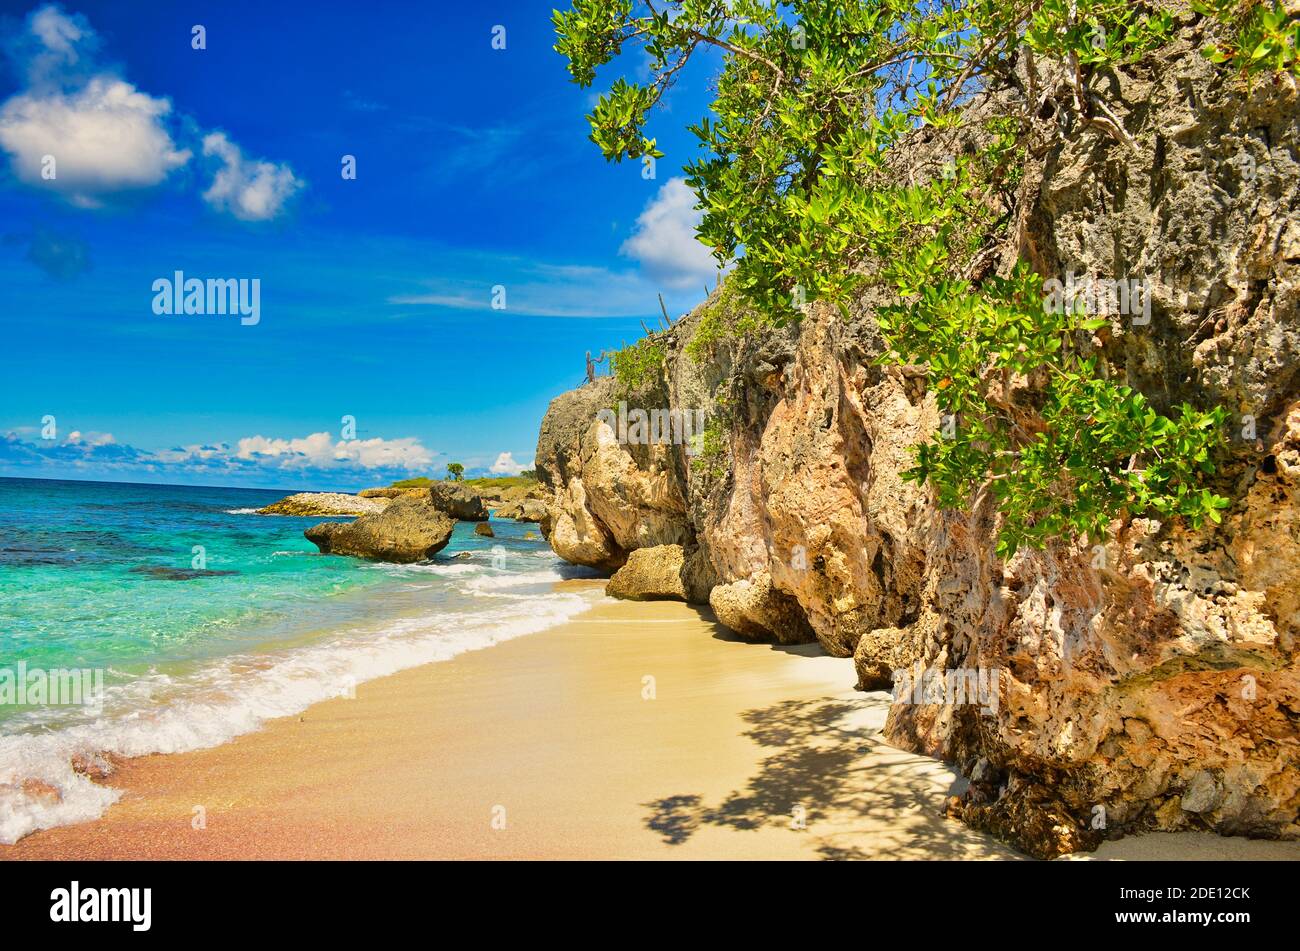 Bellissima spiaggia sull'isola caraibica di bonaire, Antille, Paesi Bassi. Nuota e tuffati in boanaire. Divertiti Foto Stock